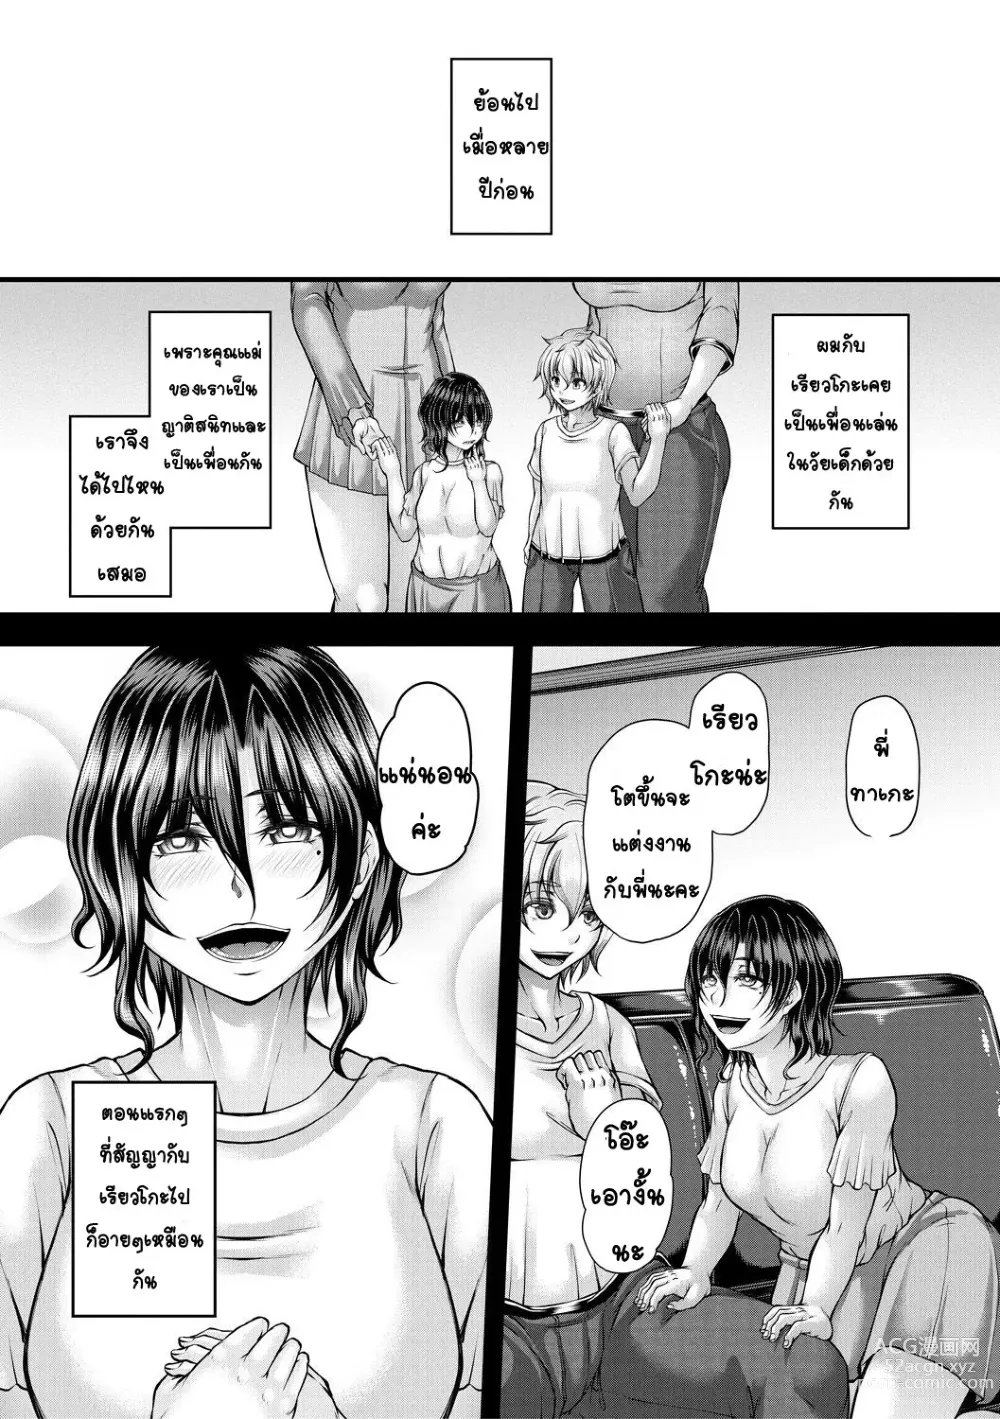 Page 3 of manga kakitsubata Kanae yoru onna ryushi wa han me rarenai 1